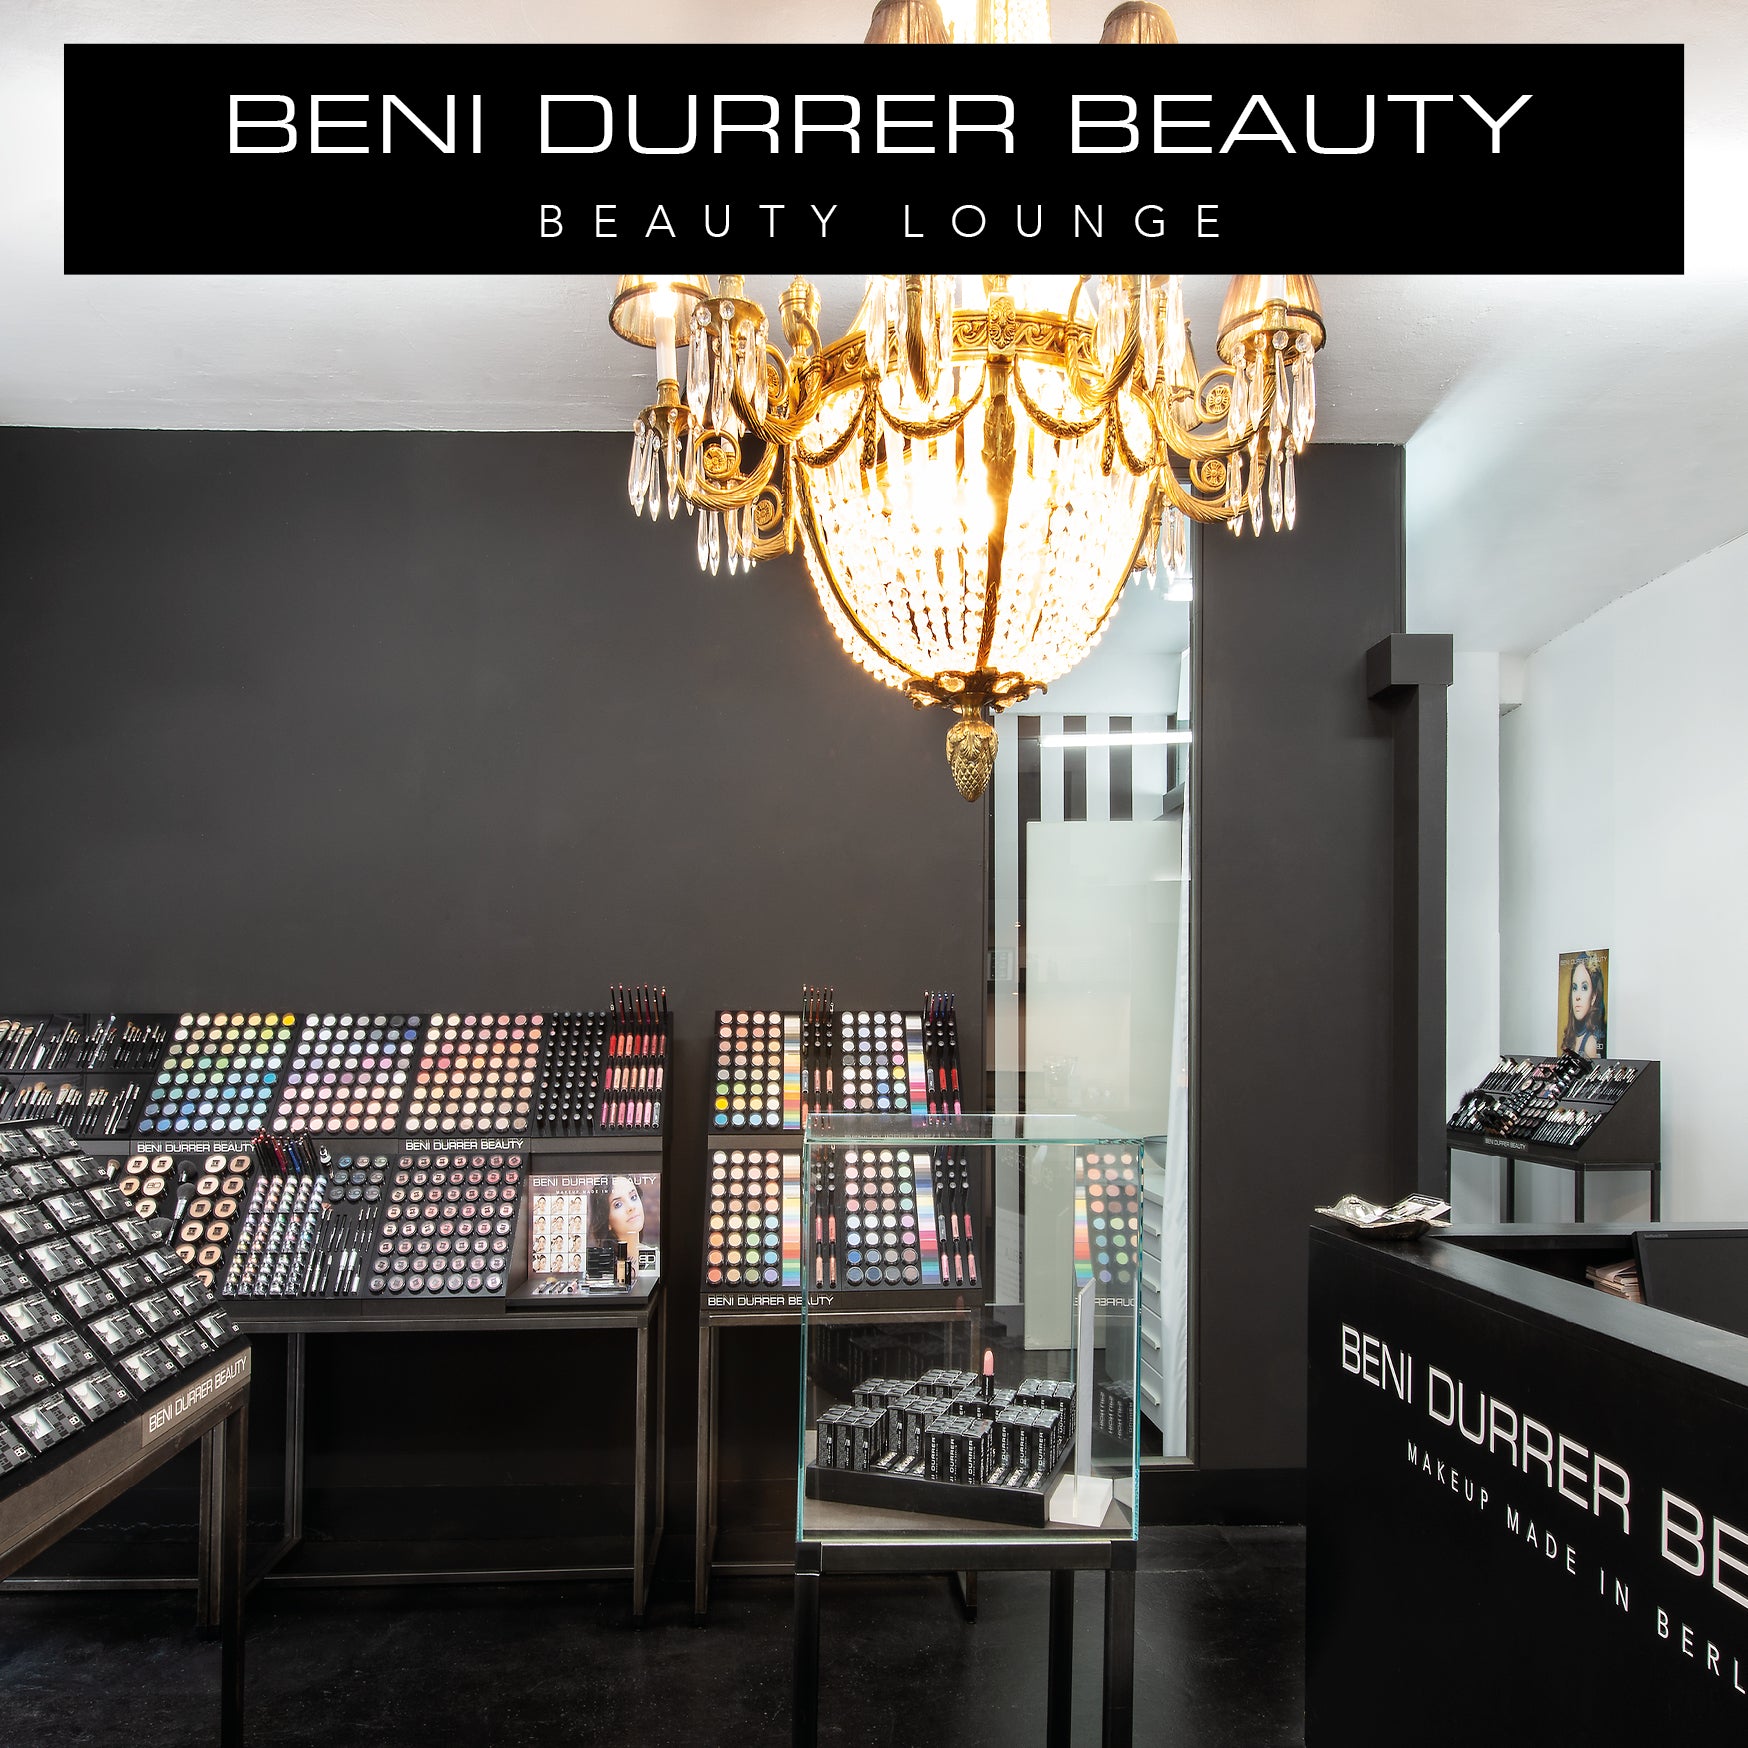 BeniDurrer Beauty Lounge